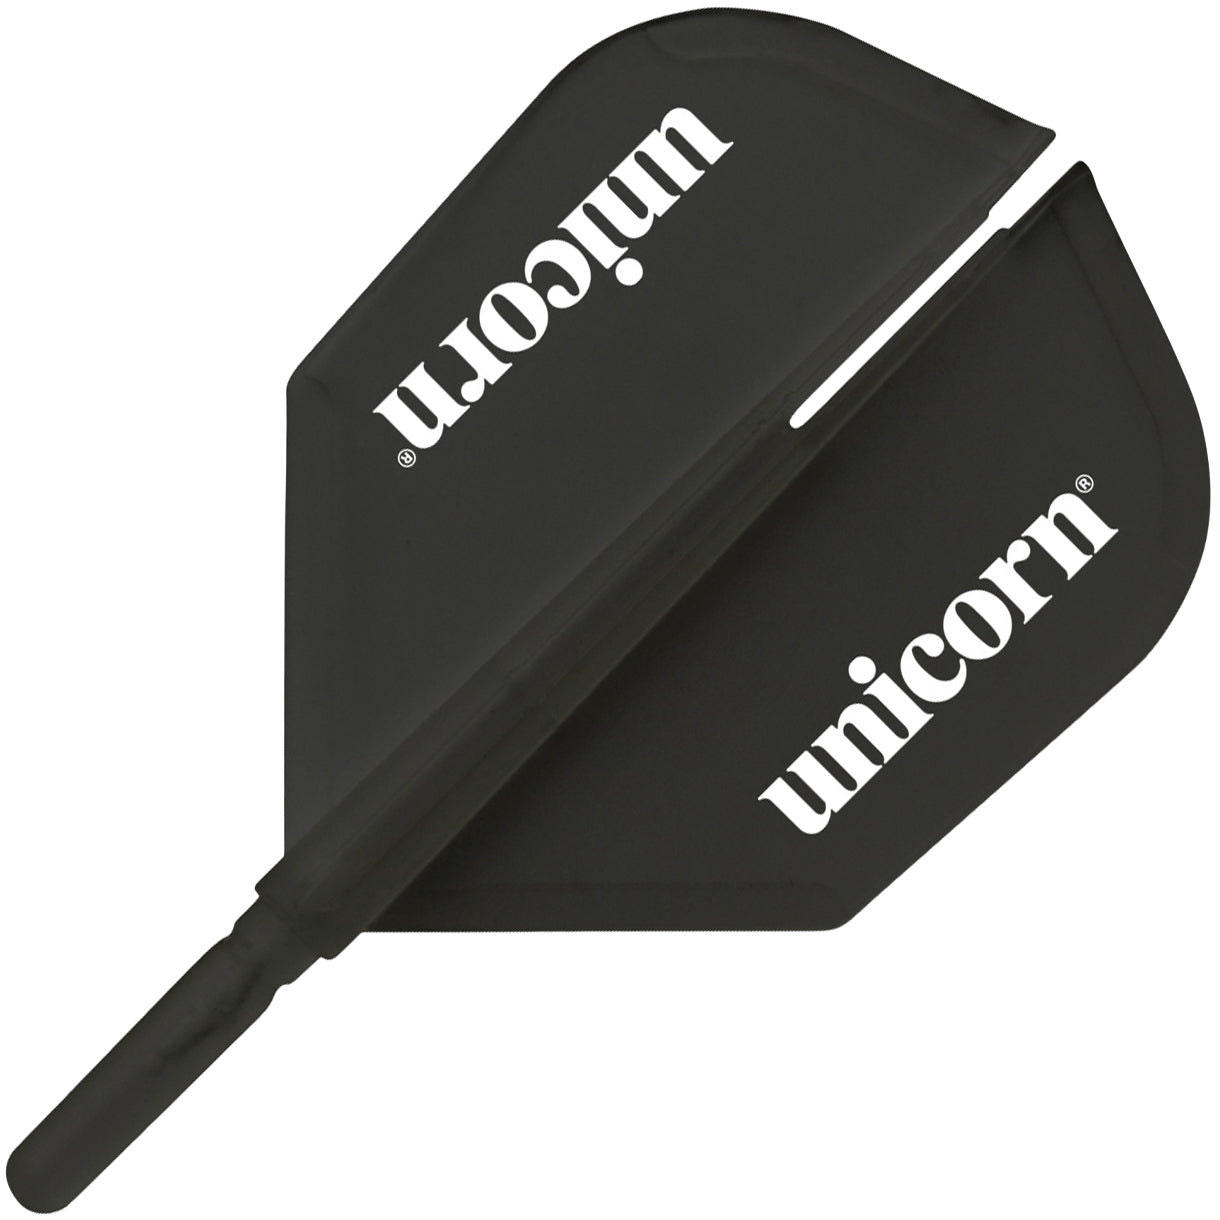 Unicorn X-Flight Shape Dart Flight Body - Black